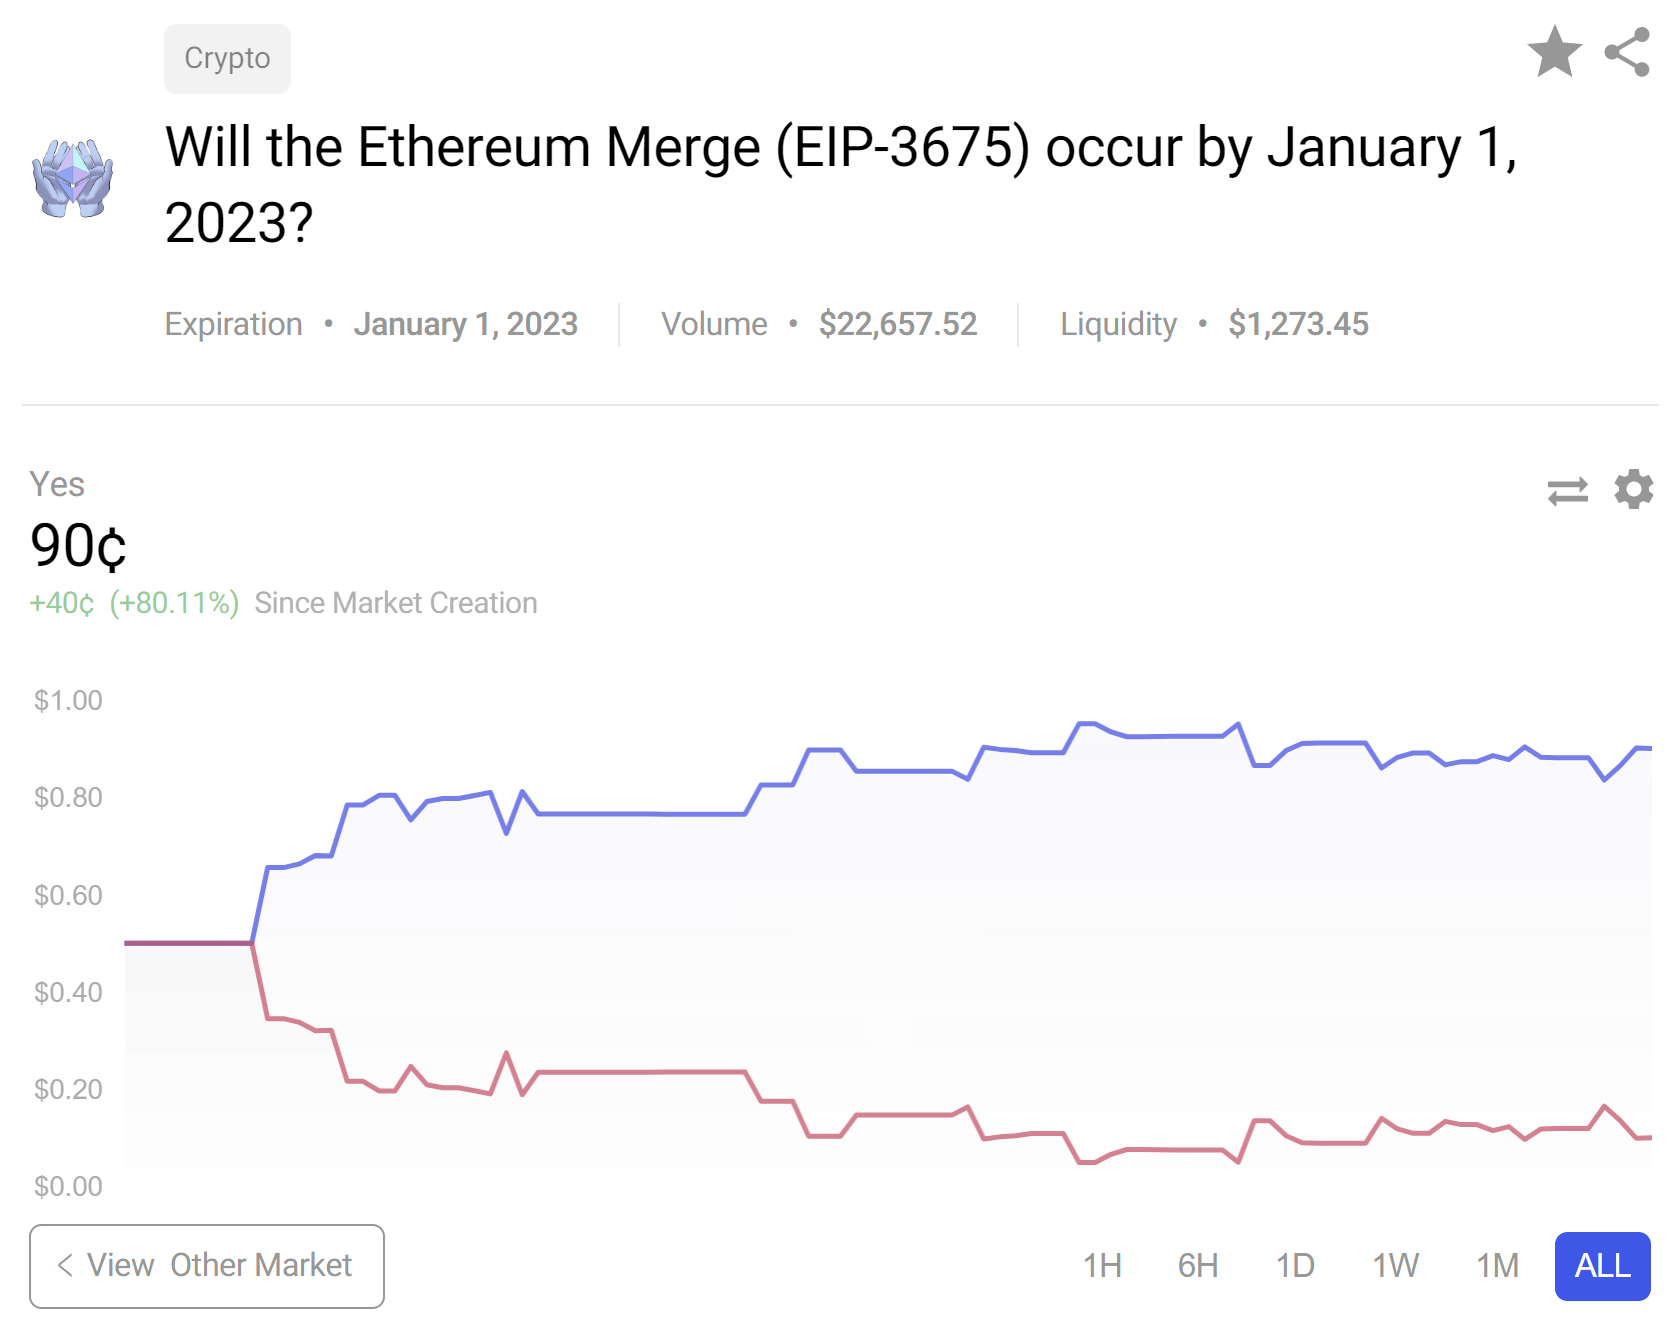 Ethereum 2.0 prediction markets